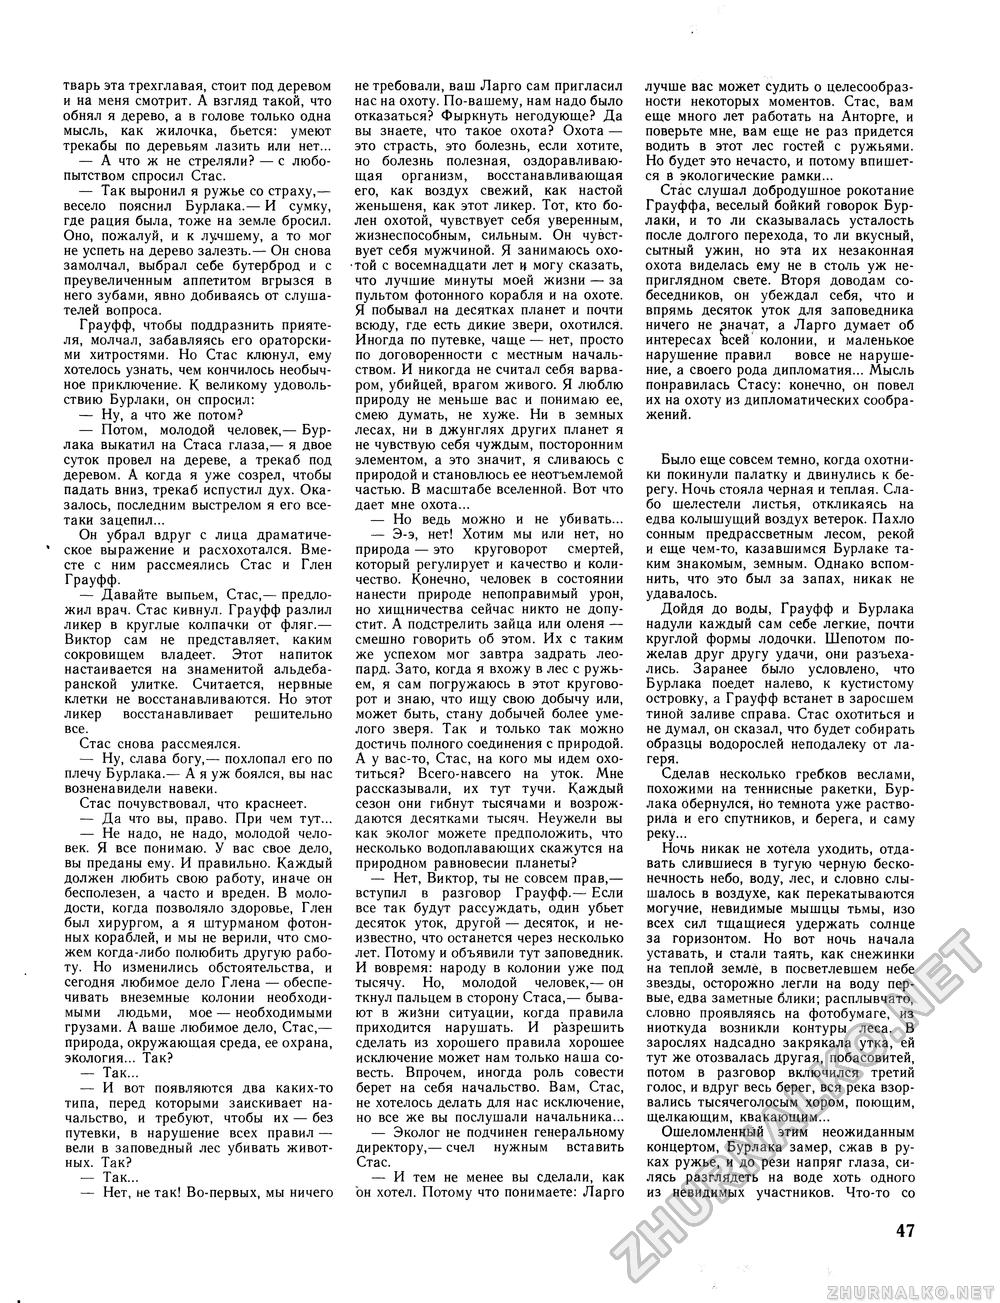 Вокруг света 1982-07, страница 49